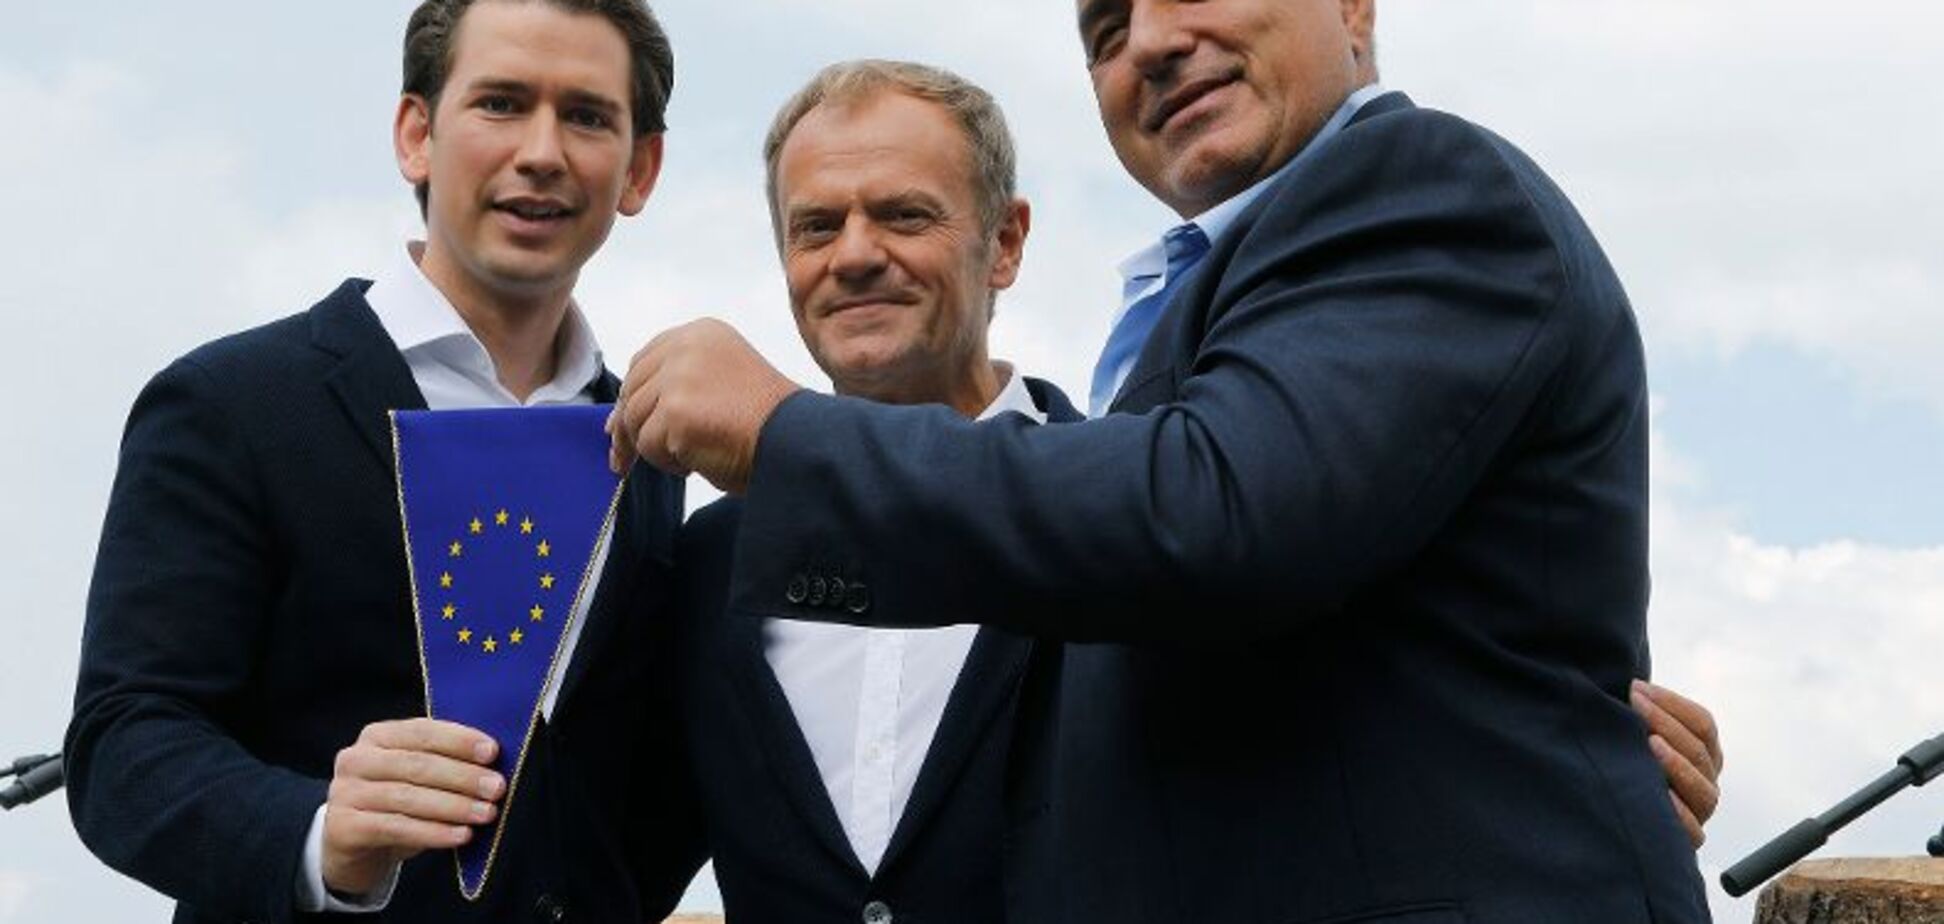 'Европа, которая защищает': Совет ЕС получил нового председателя